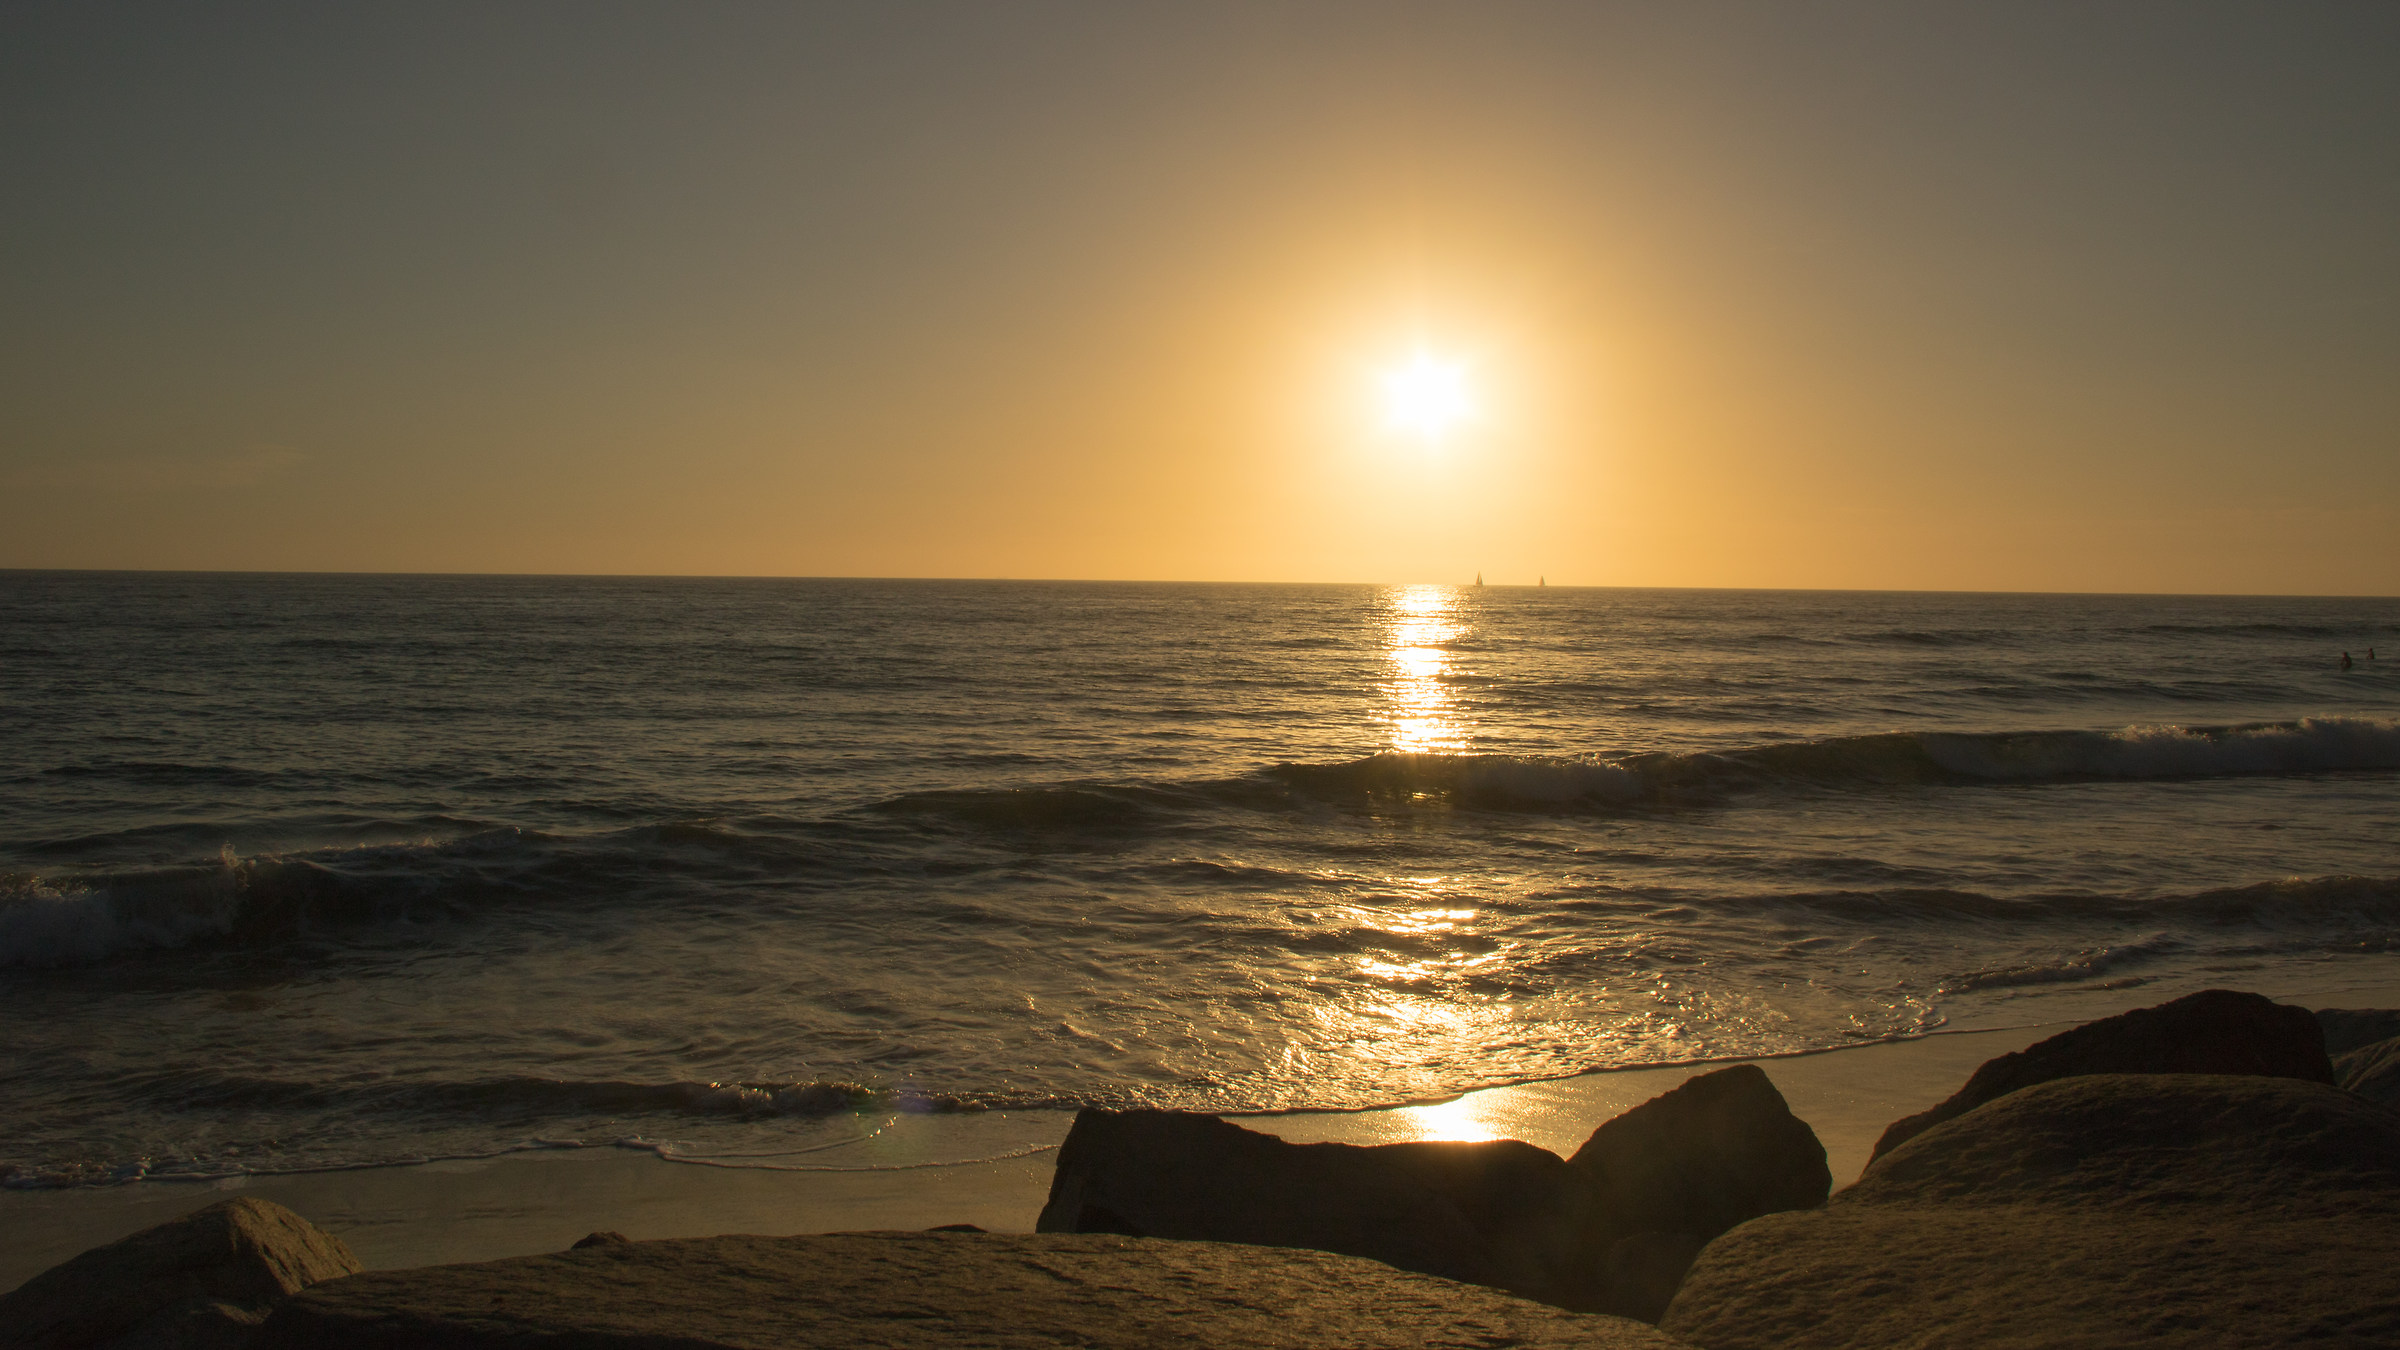 Sunset at Ocean View, California...